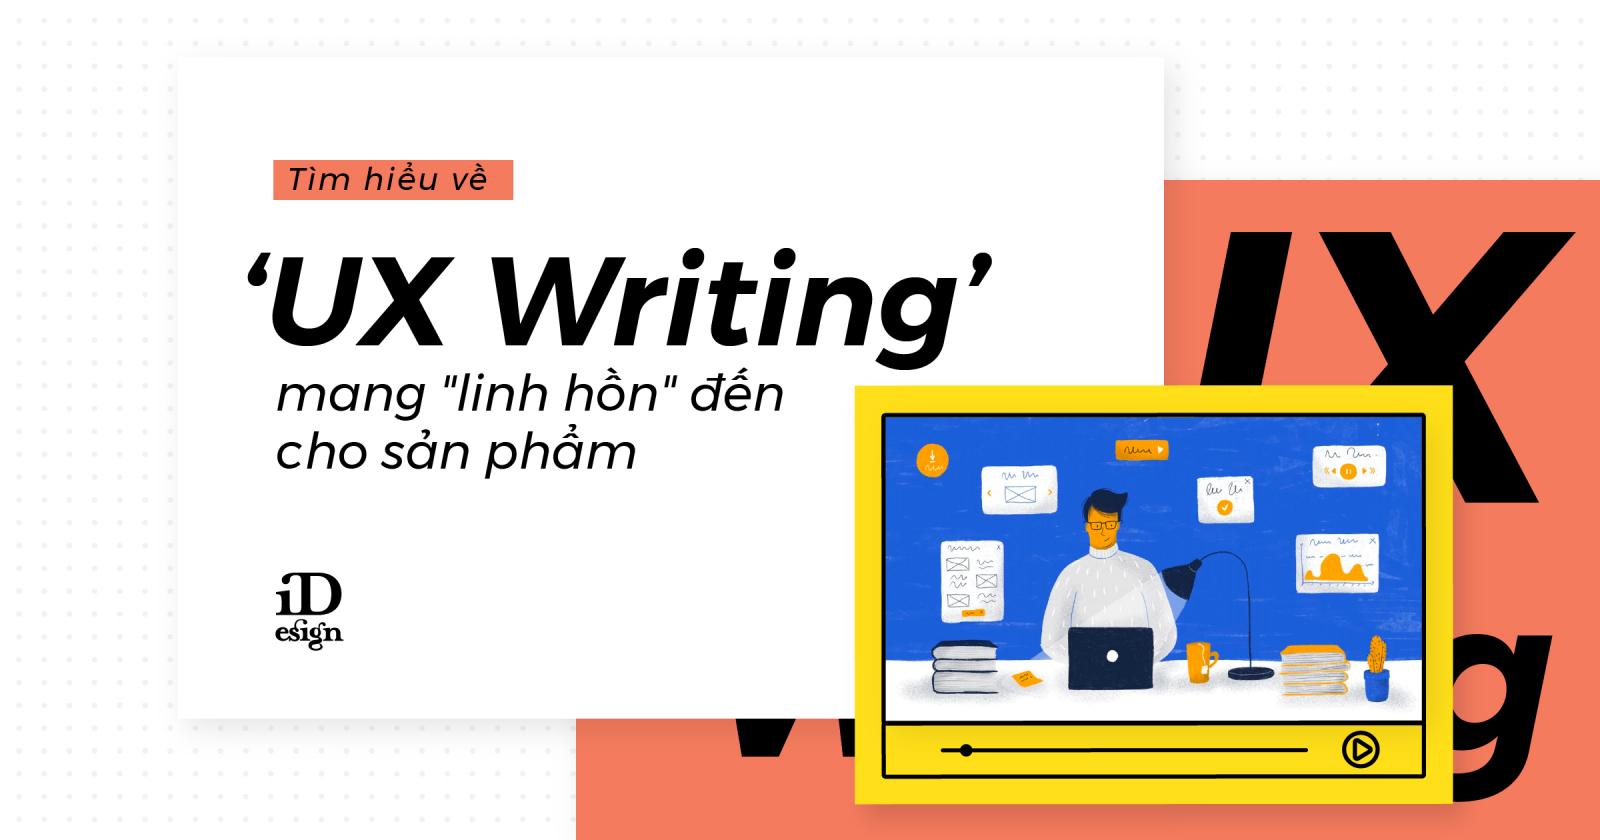 id uxwriting 10 - UX writing là gì? Sự khác biệt giữa UX Writing và Copywriting